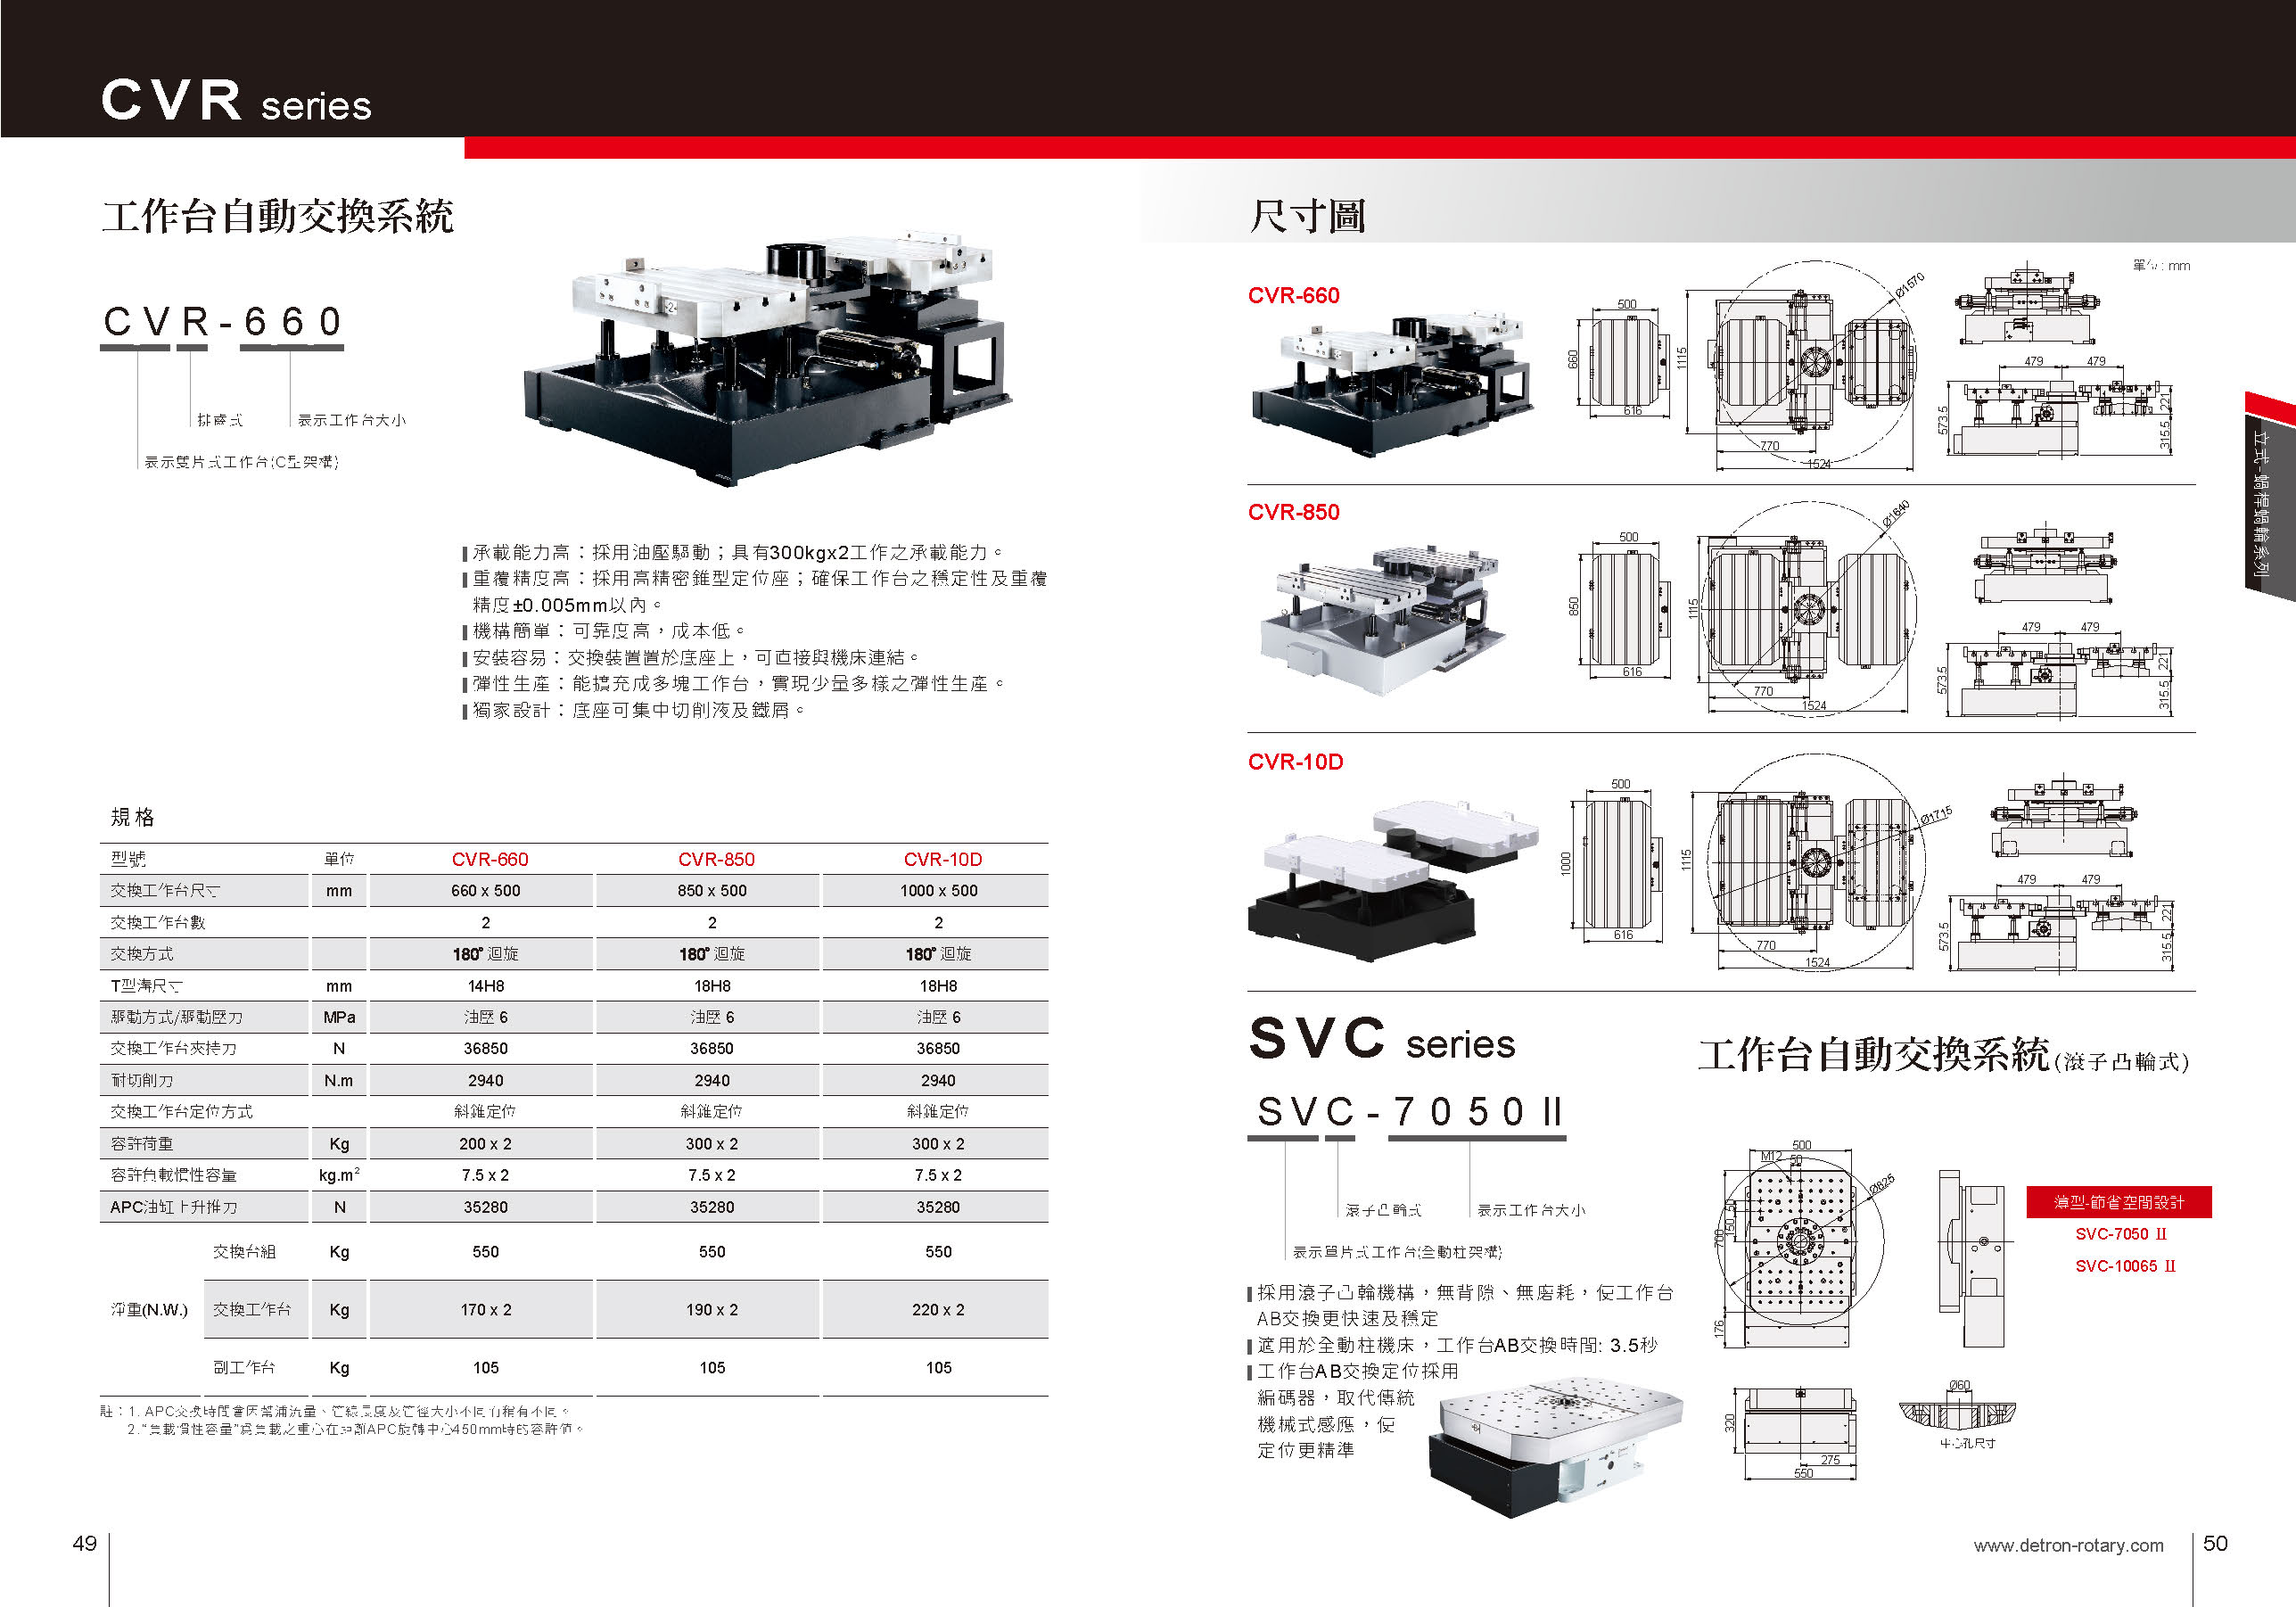 (p49-50)_CVR-660 CVR-850 CVR-10D